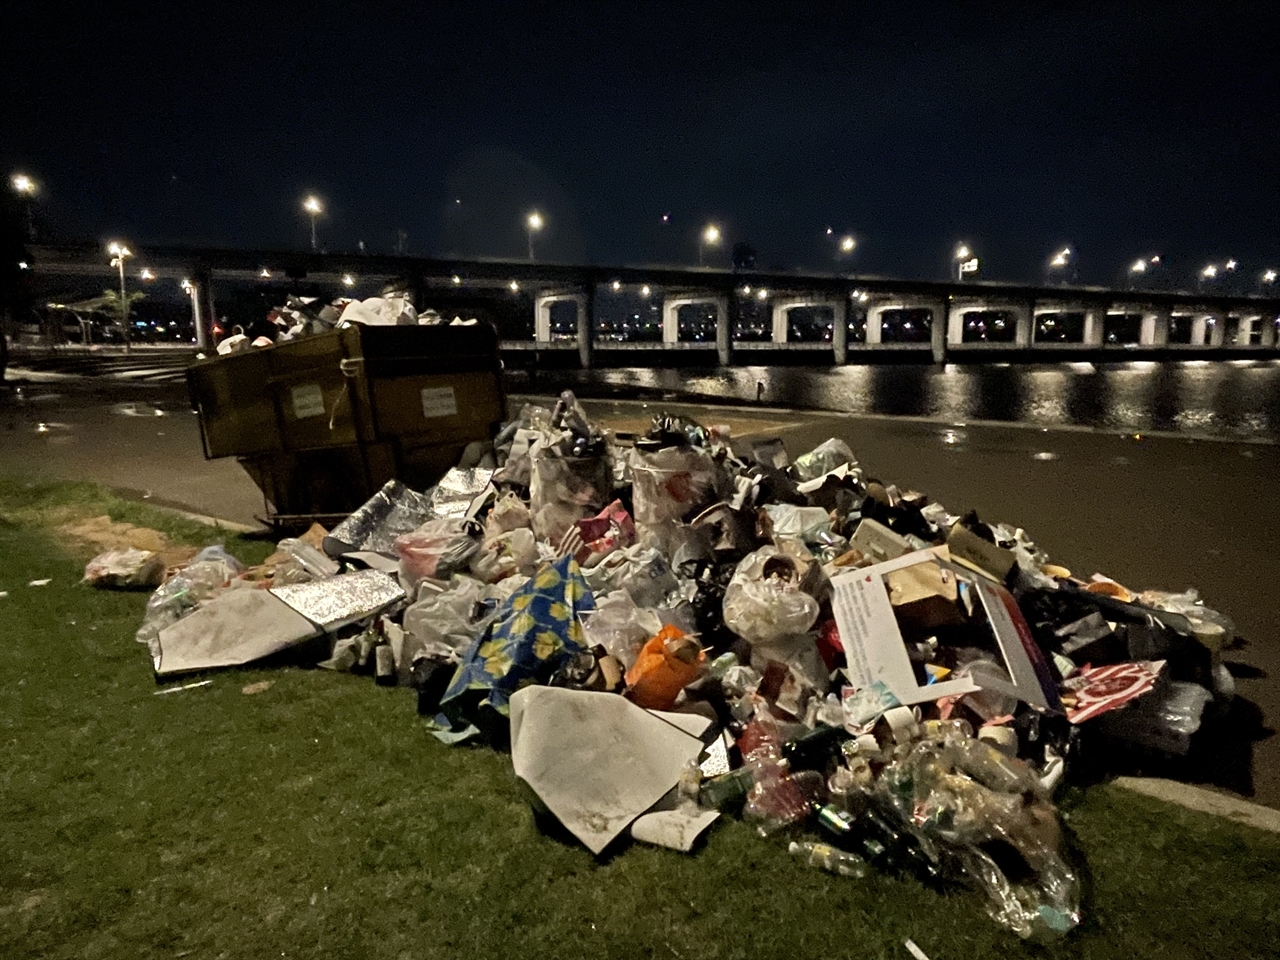  27일 새벽, 한강달빛야시장에 생긴 '쓰레기 무덤'의 모습